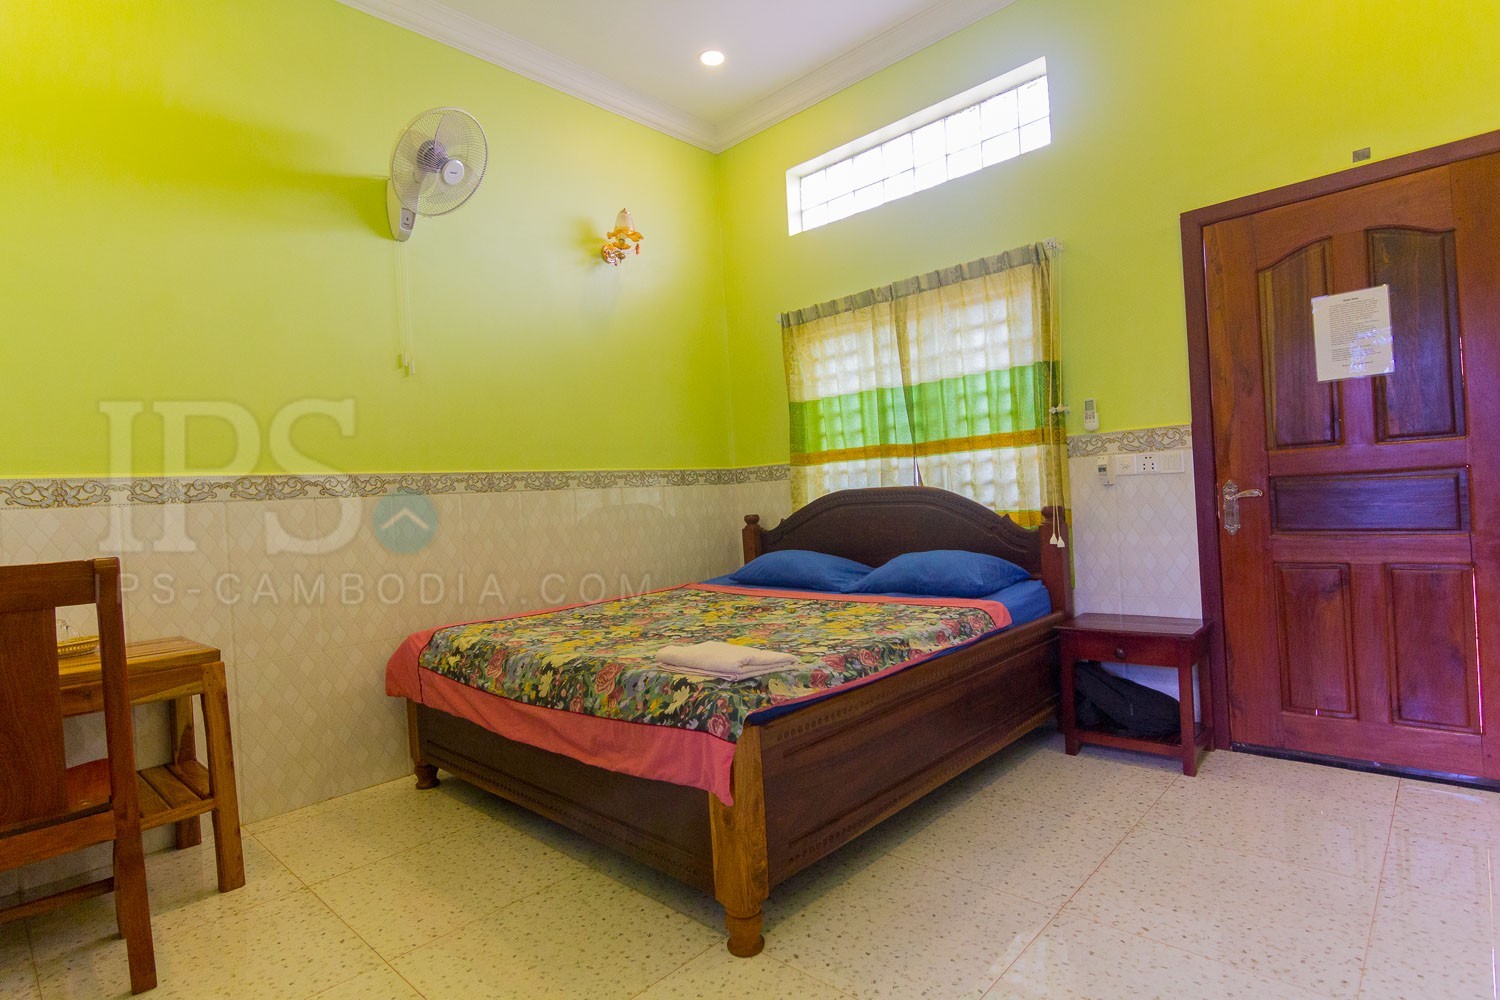 Stuido Apartment For Rent - Chreav, Siem Reap